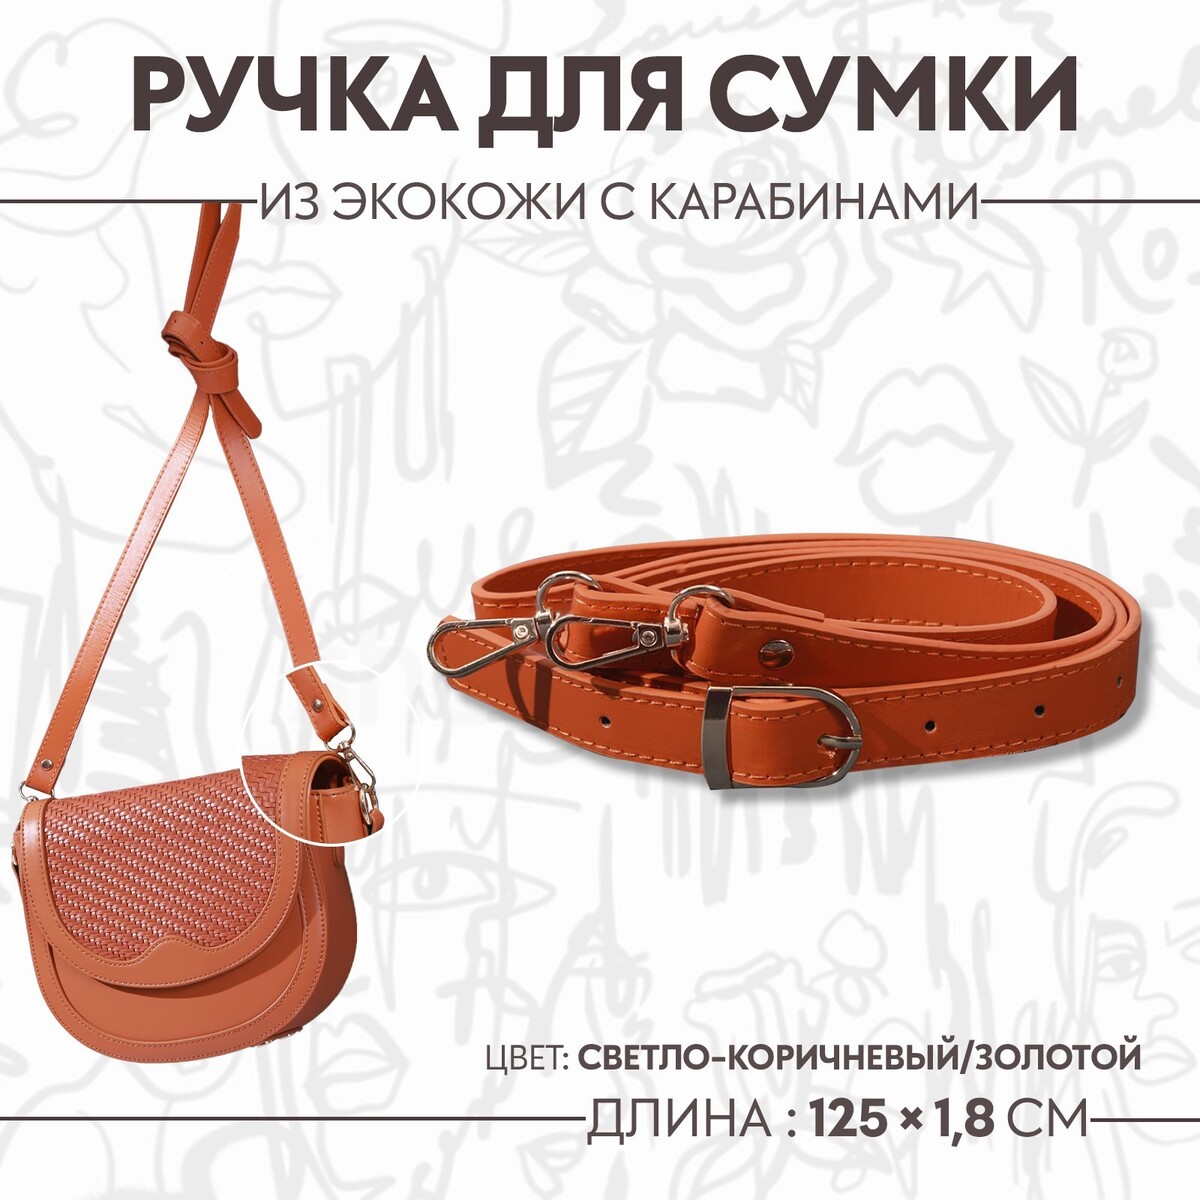 Ручка для сумки из экокожи, с карабинами, 125 × 1,8 см, цвет светло-коричневый сарафан женский коричневый из экокожи